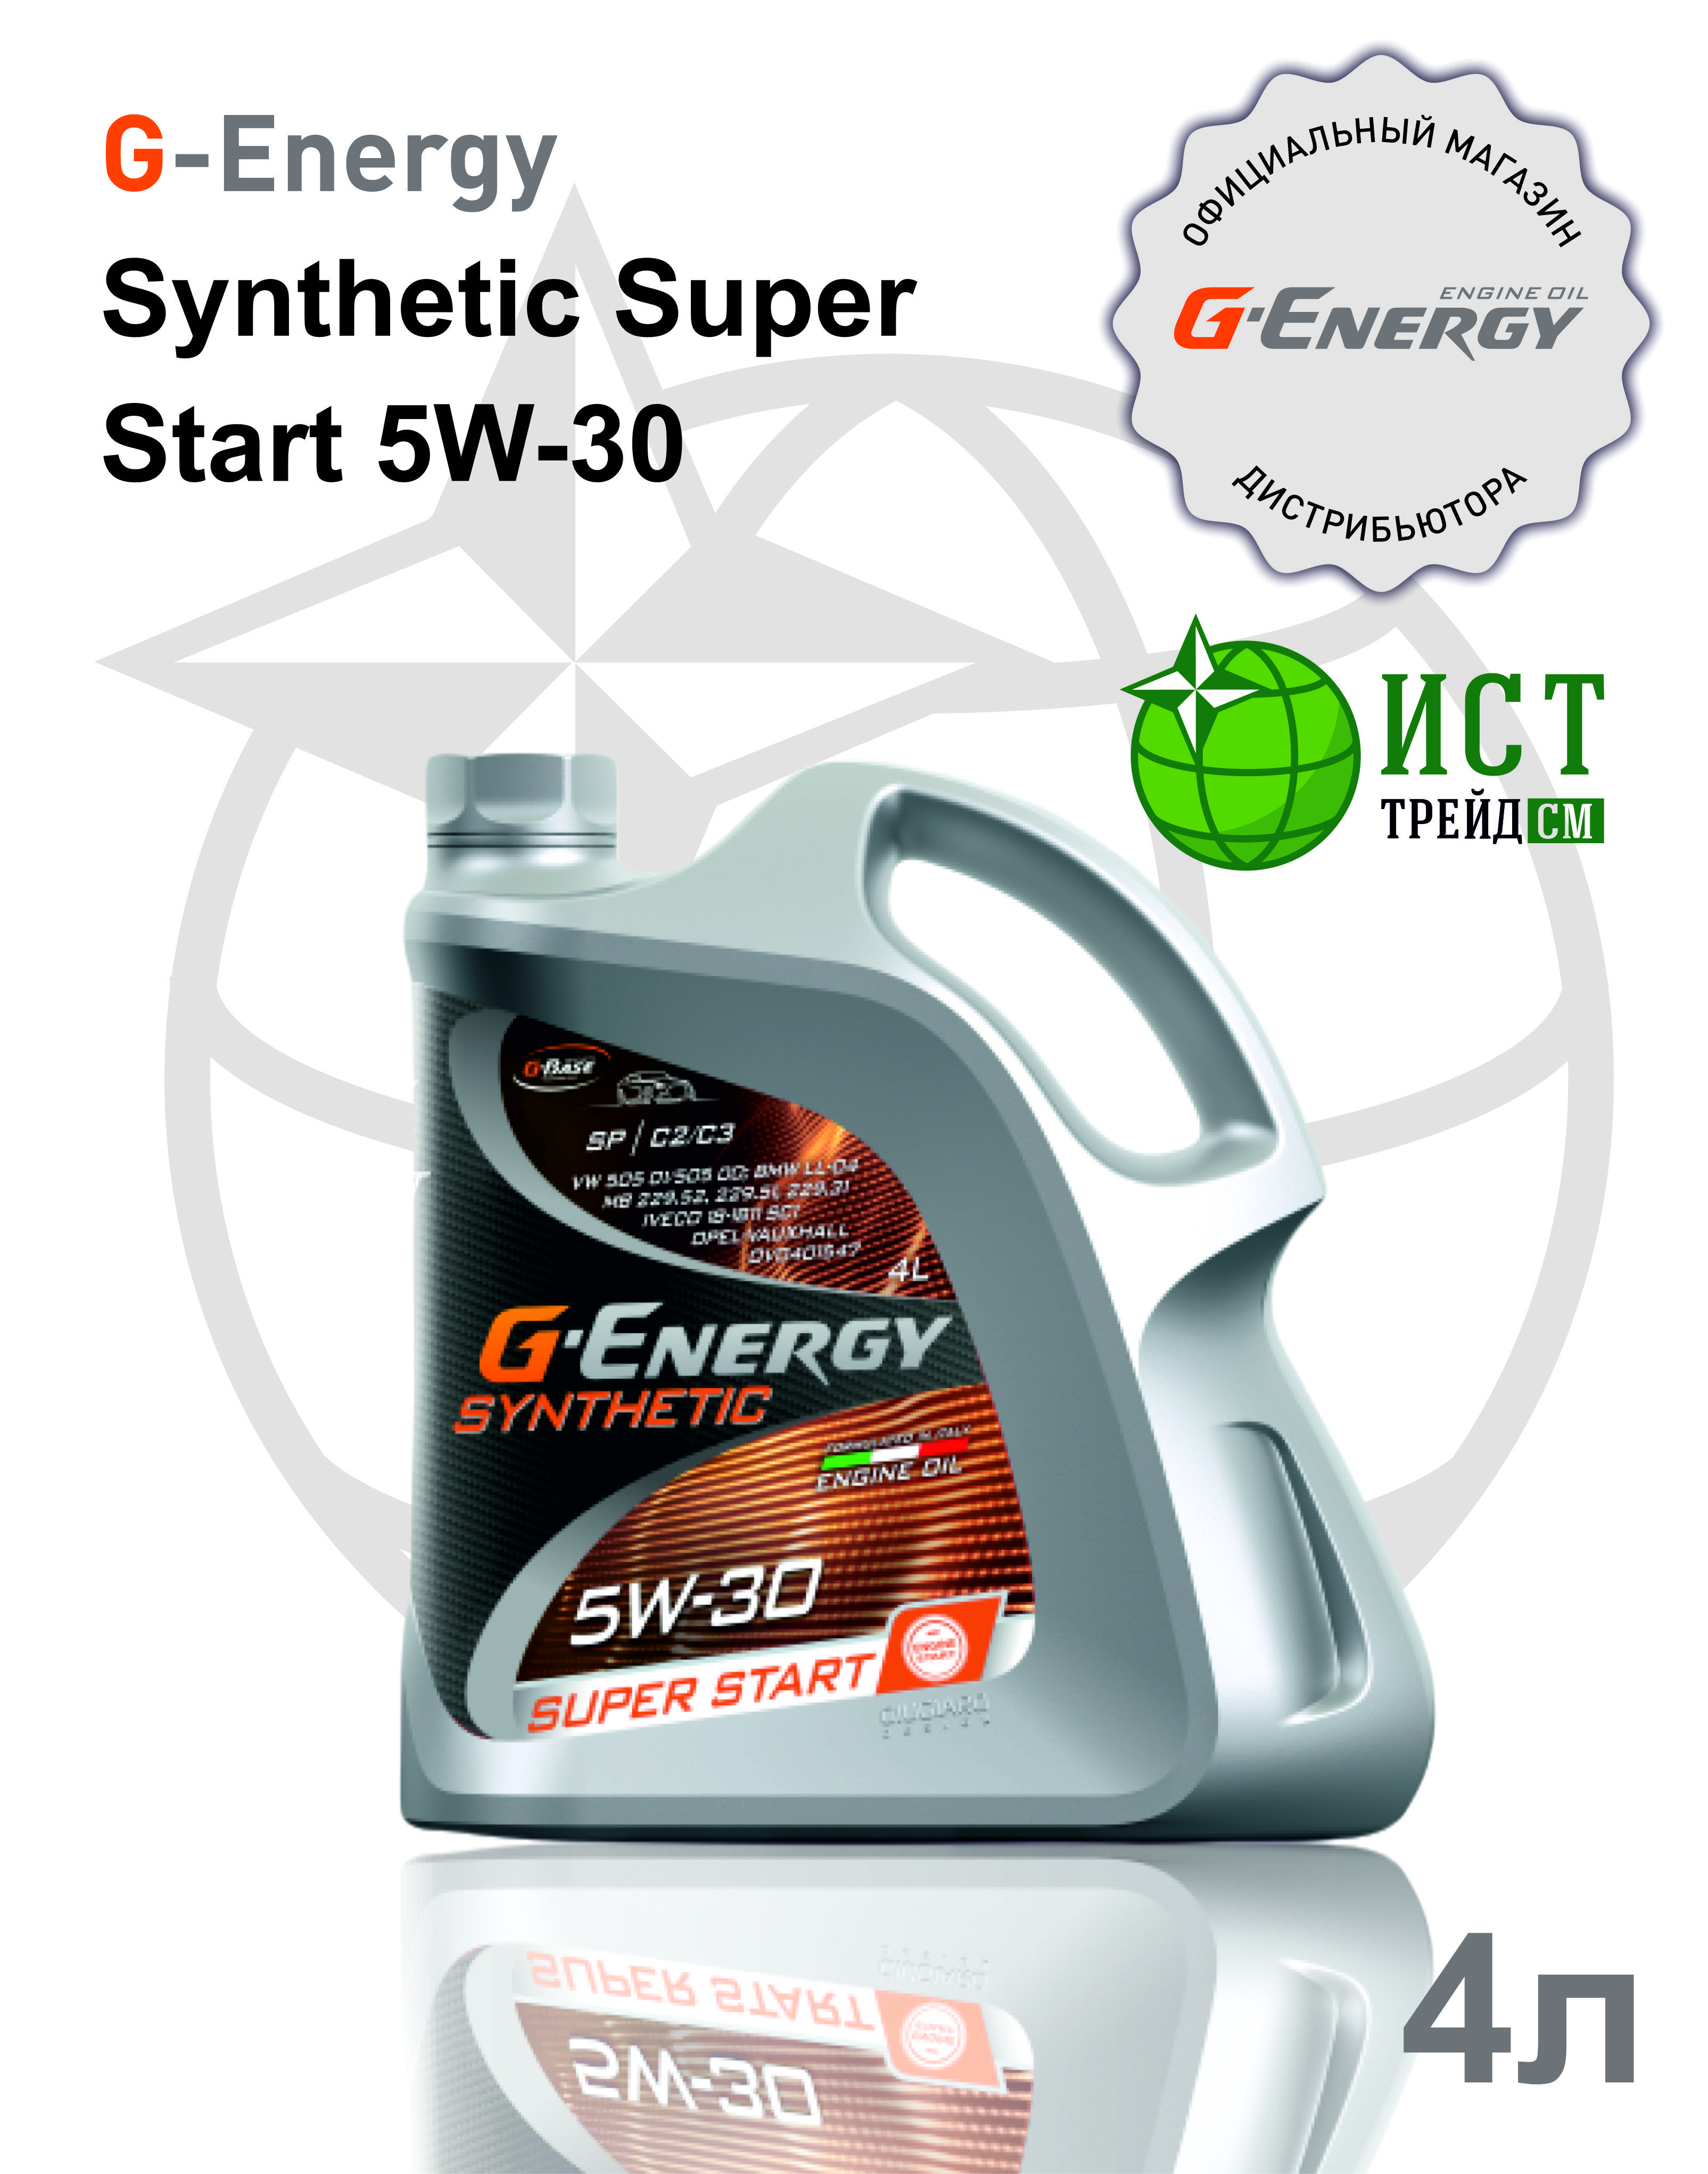 G-Energy Synthetic super start 5w-30. Super start 5w 30